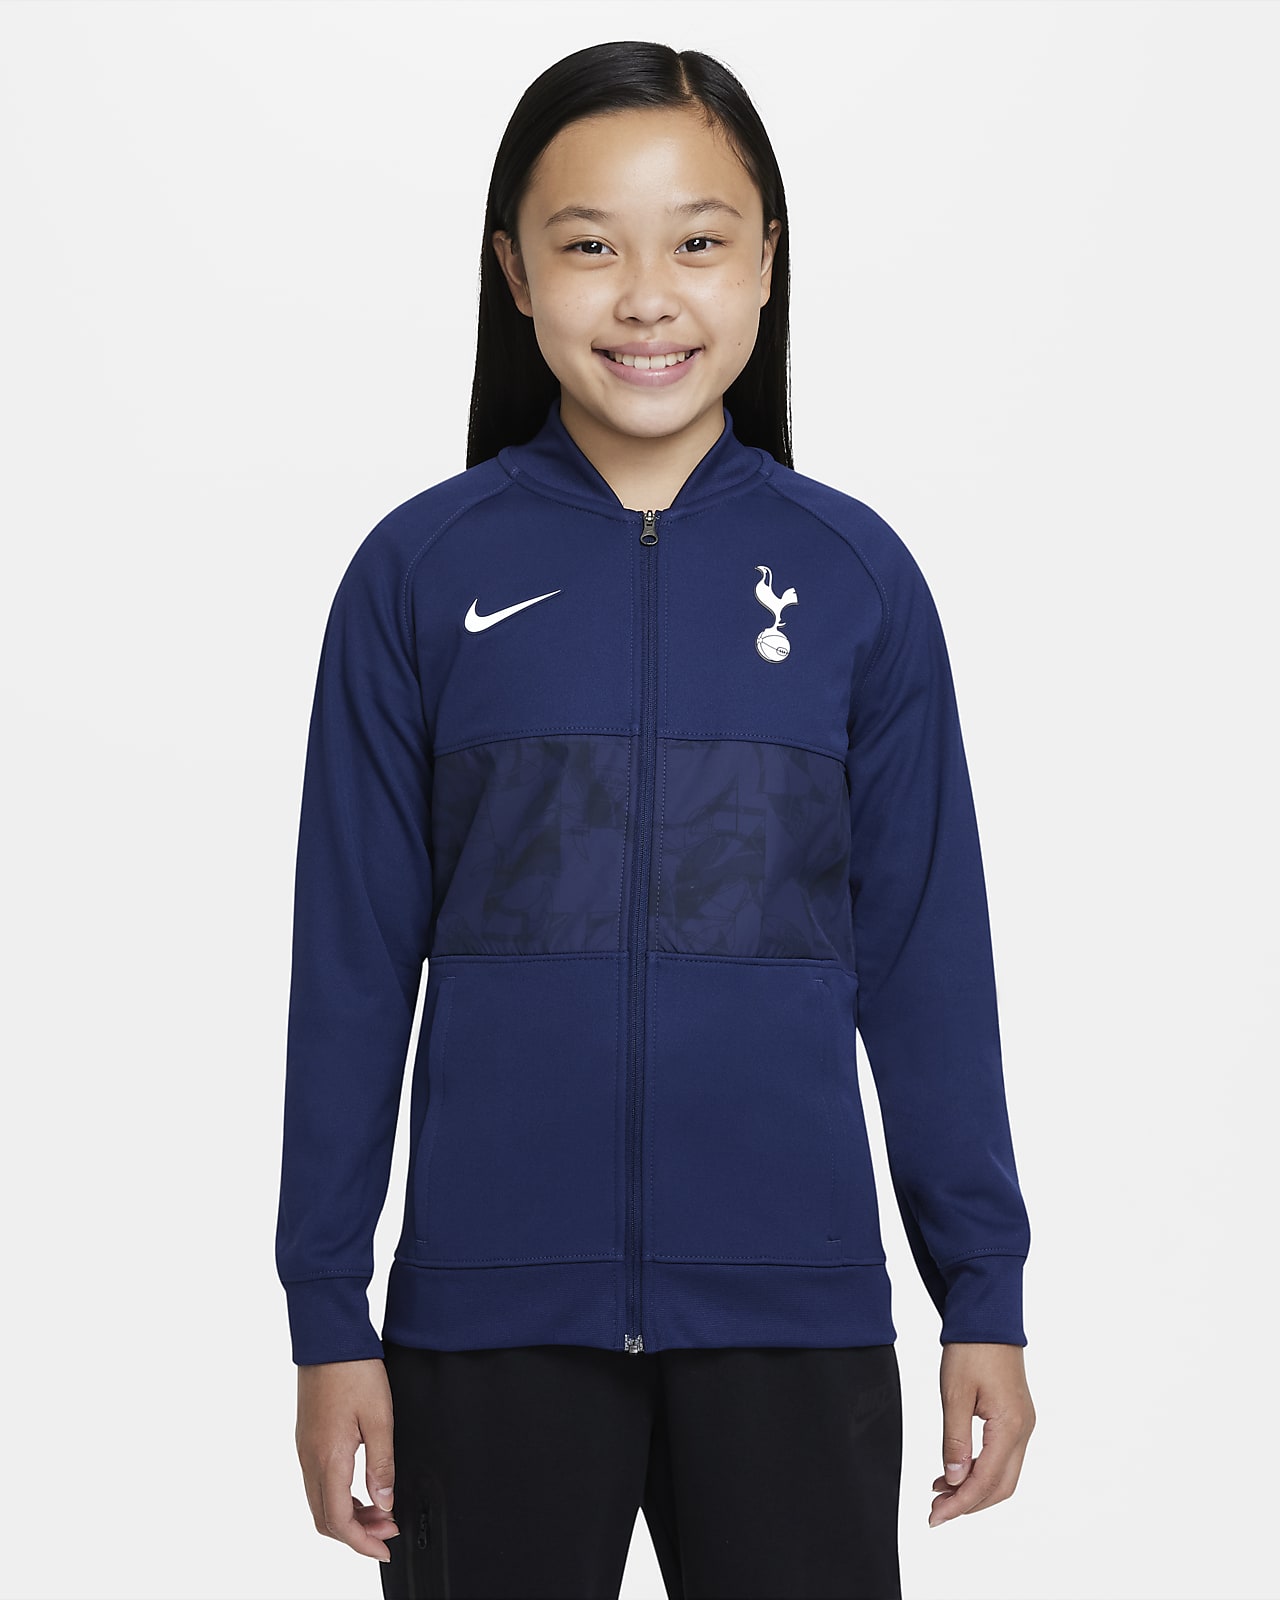 Tottenham Hotspur Chaqueta de fútbol con cremallera completa - Niño/a